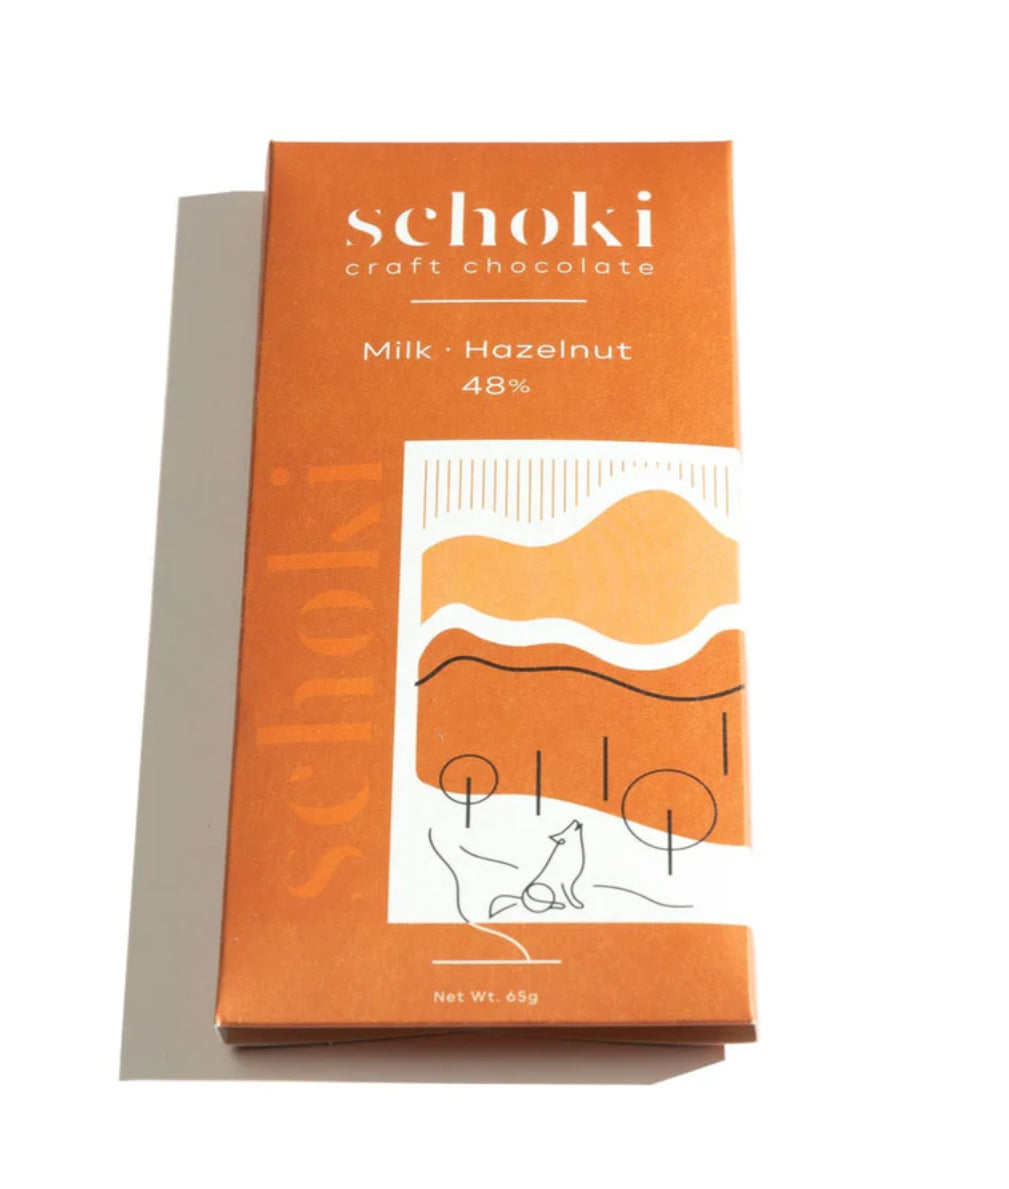 Schoki chocolate